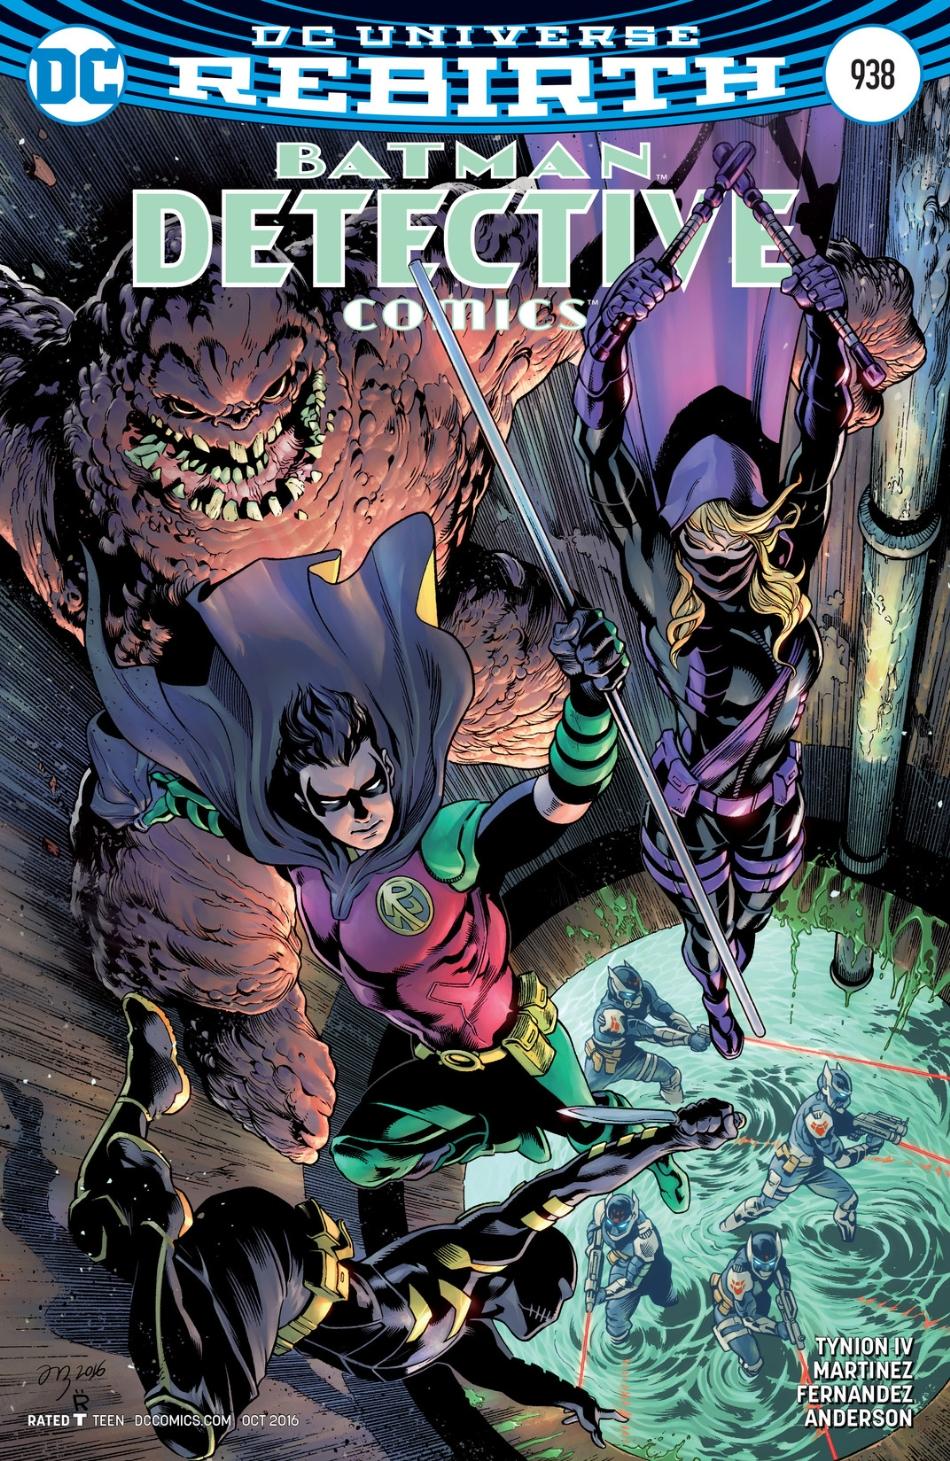 Detective Comics Vol. 1 #938